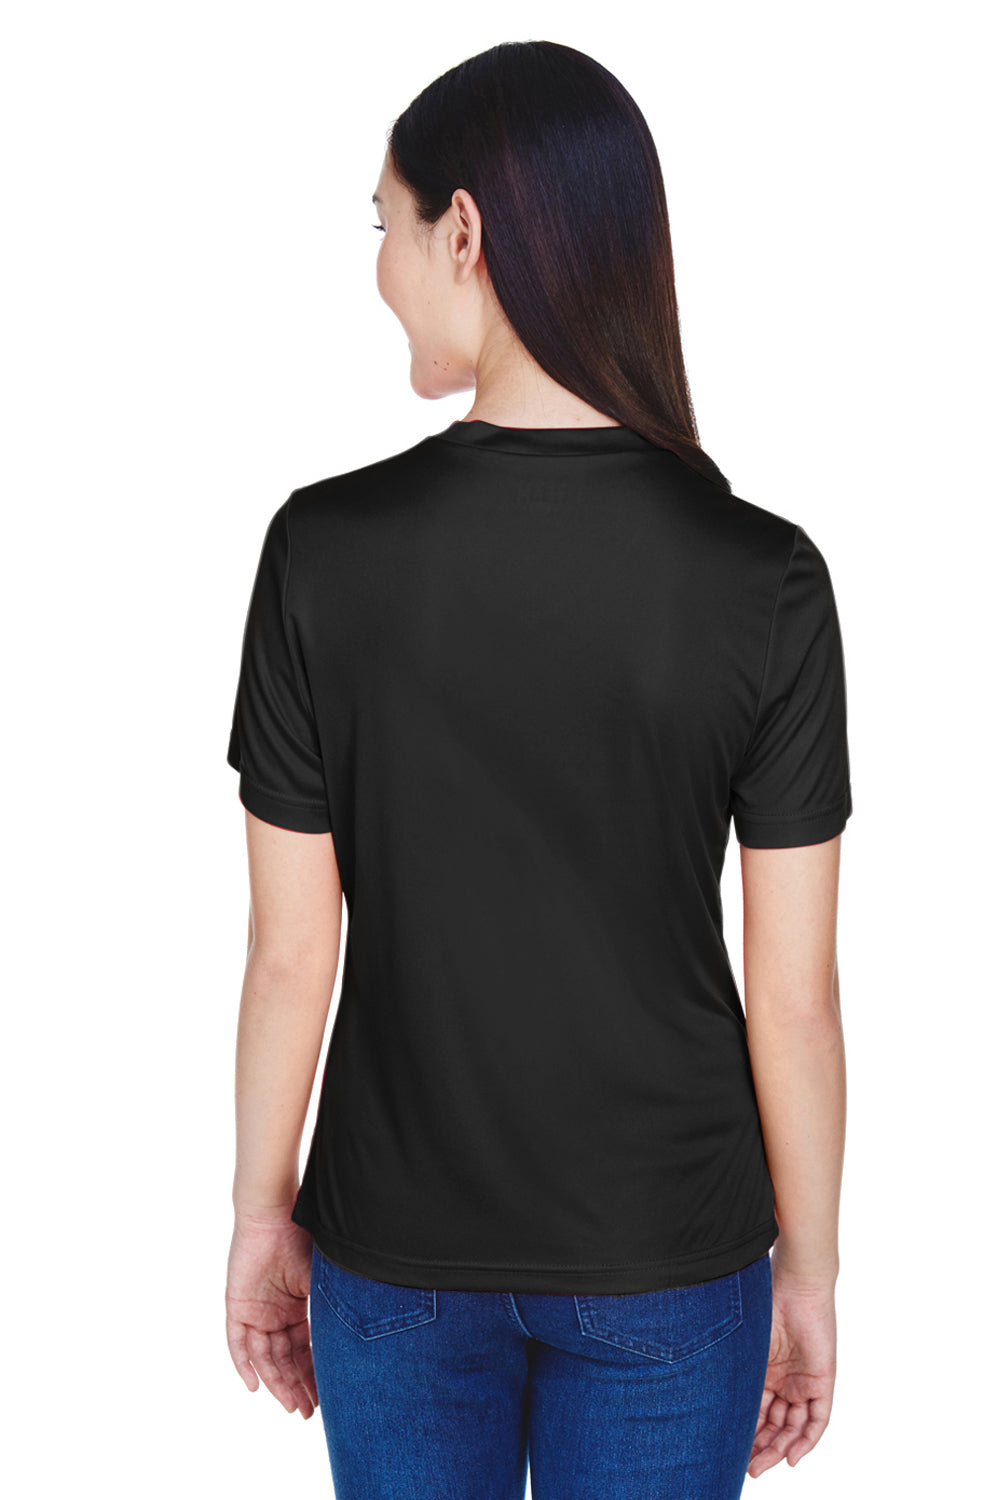 Team 365 TT11W Womens Zone Performance Moisture Wicking Short Sleeve V-Neck T-Shirt Black Back